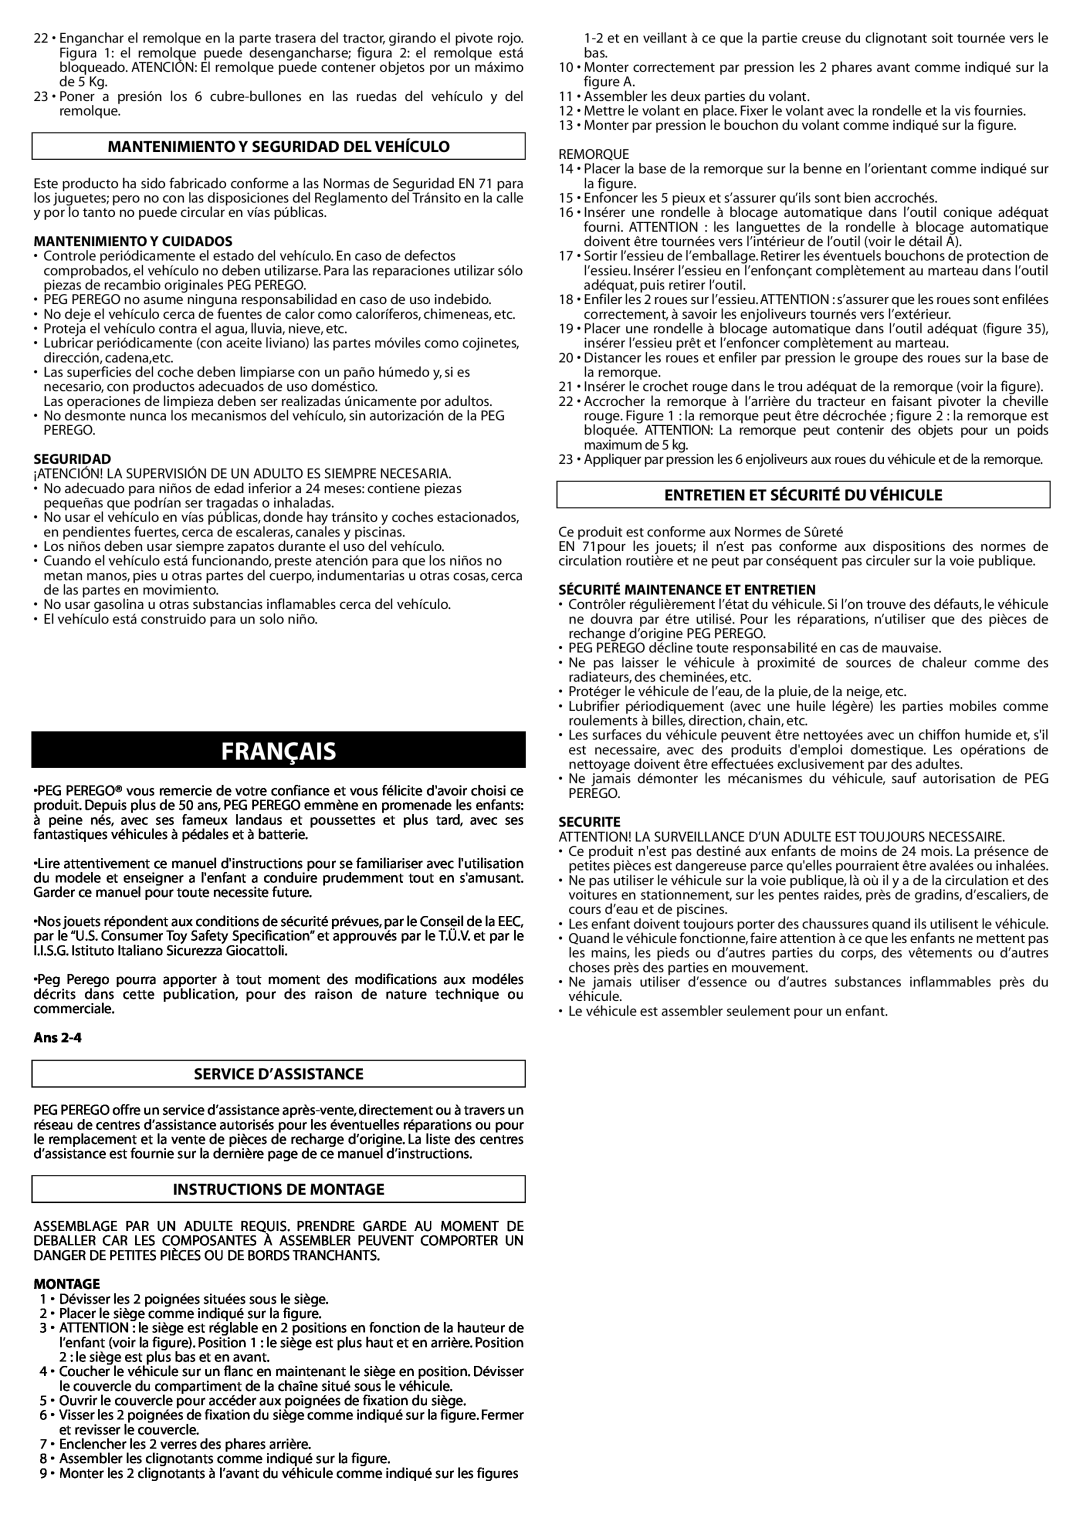 Peg-Perego IGCD0522 manual Français, Mantenimiento Y Seguridad Del Vehículo, Service D’Assistance, Instructions De Montage 